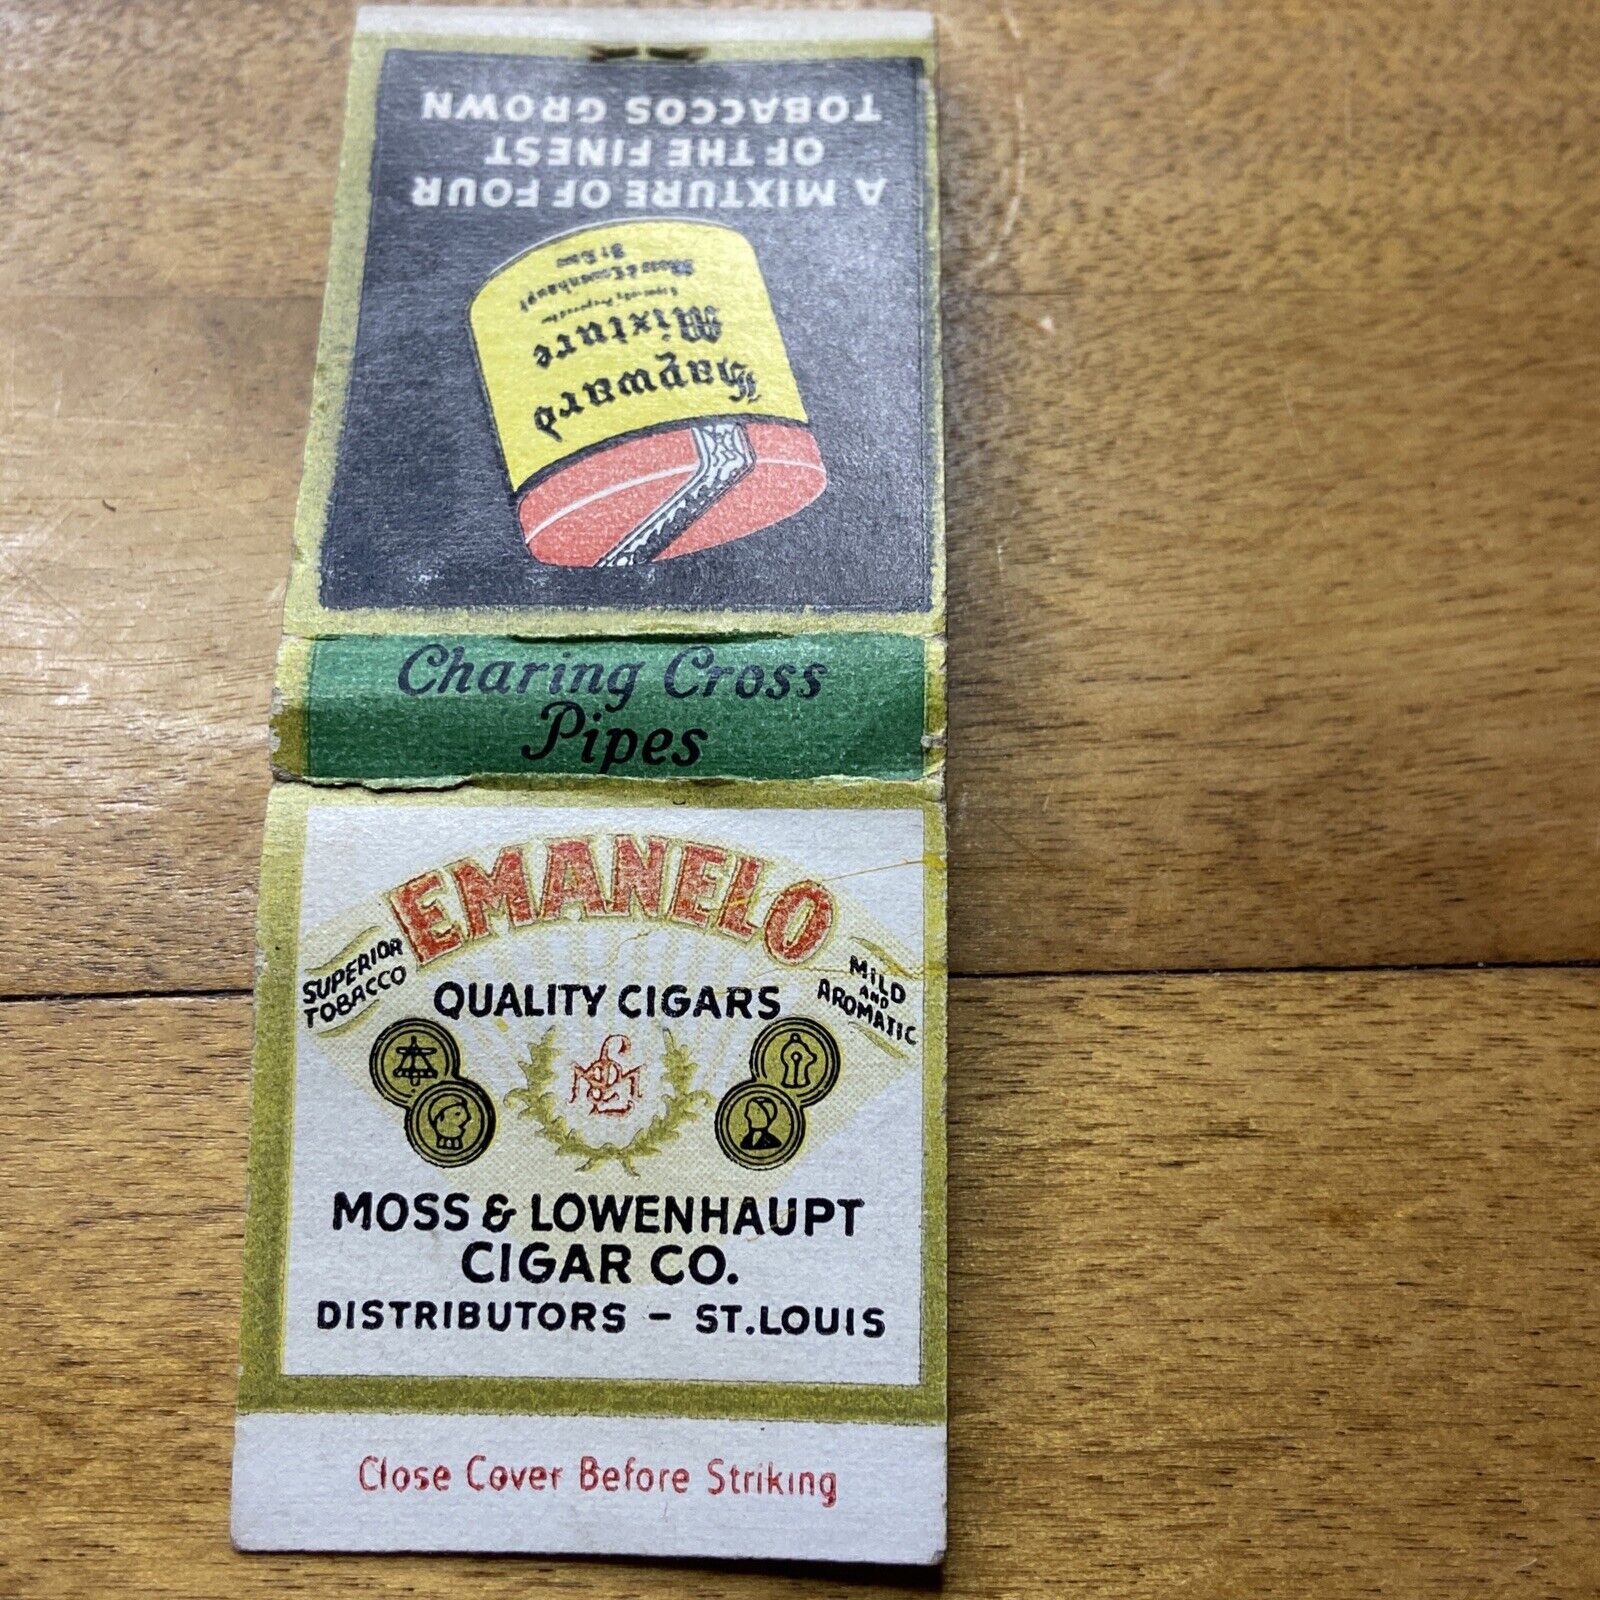 Emanelo Quality Cigars (St Louis) Vintage Matchbook